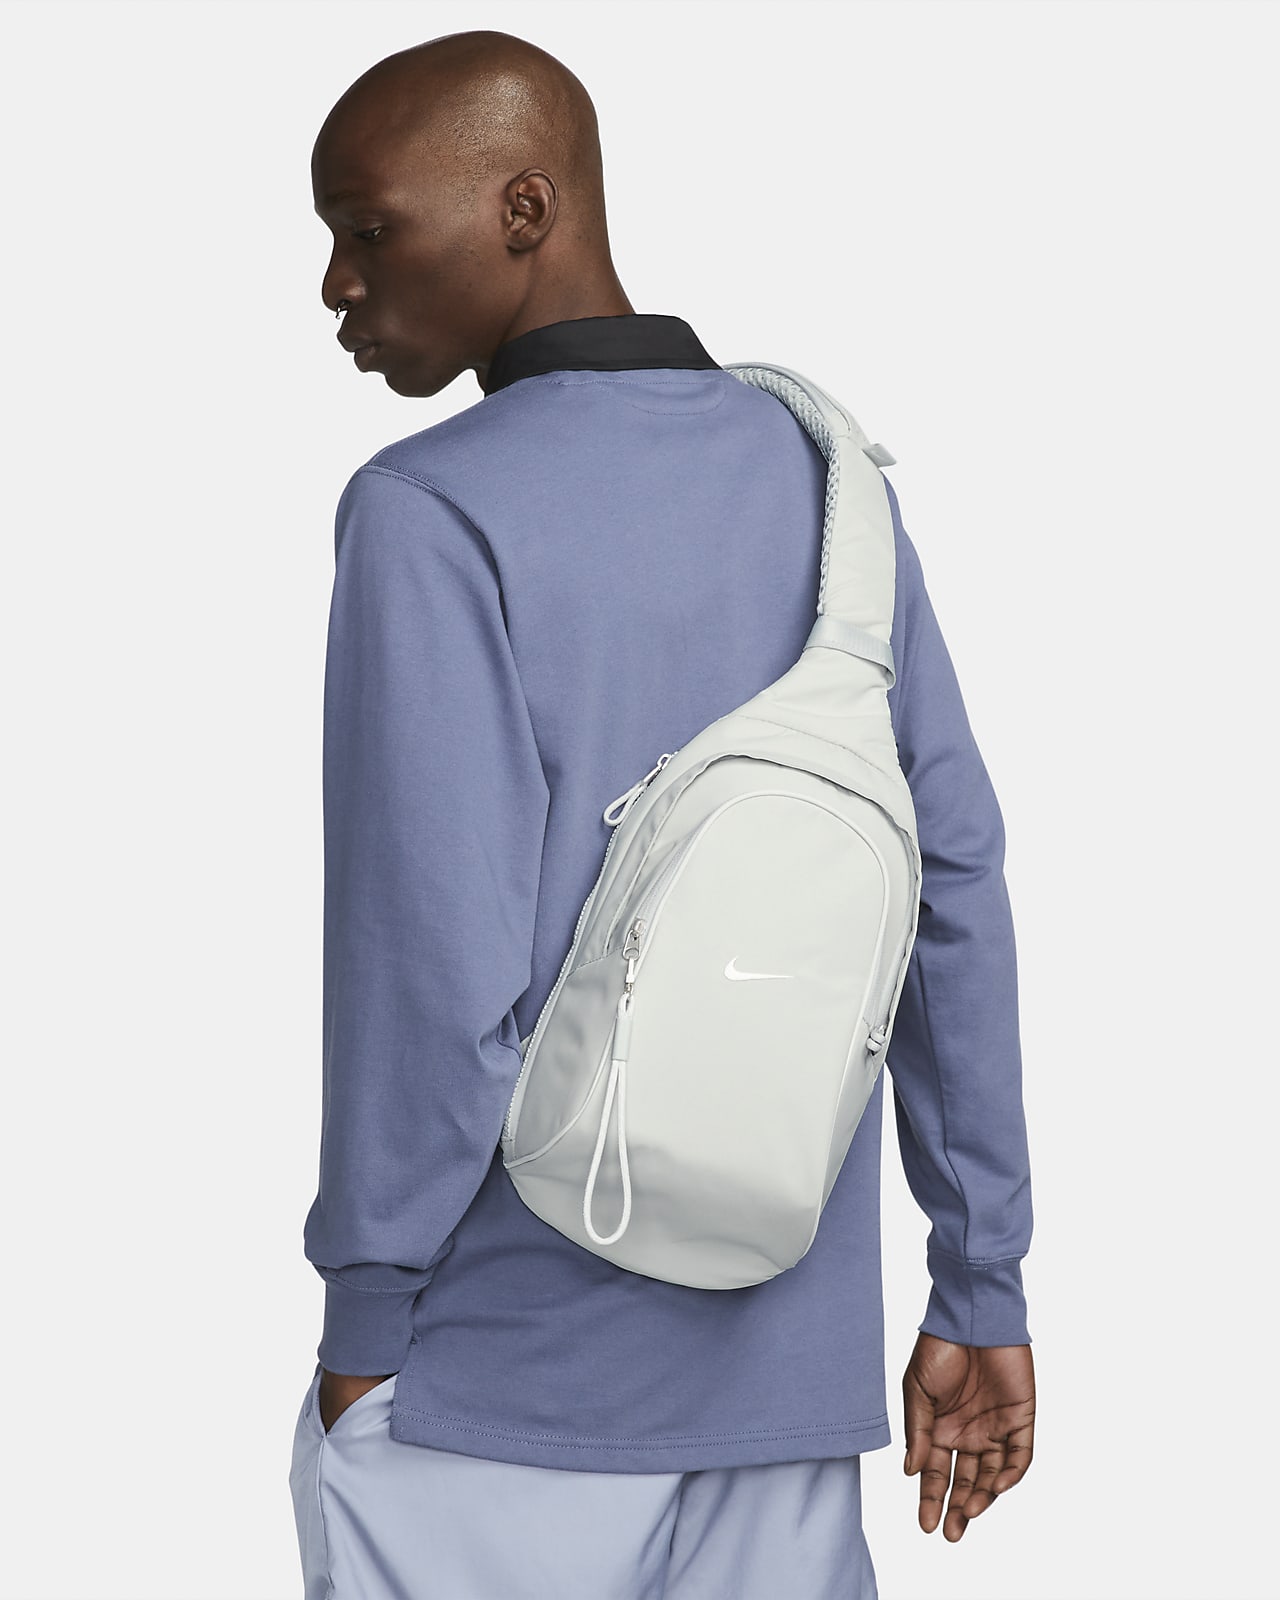 Details 103+ sling bag